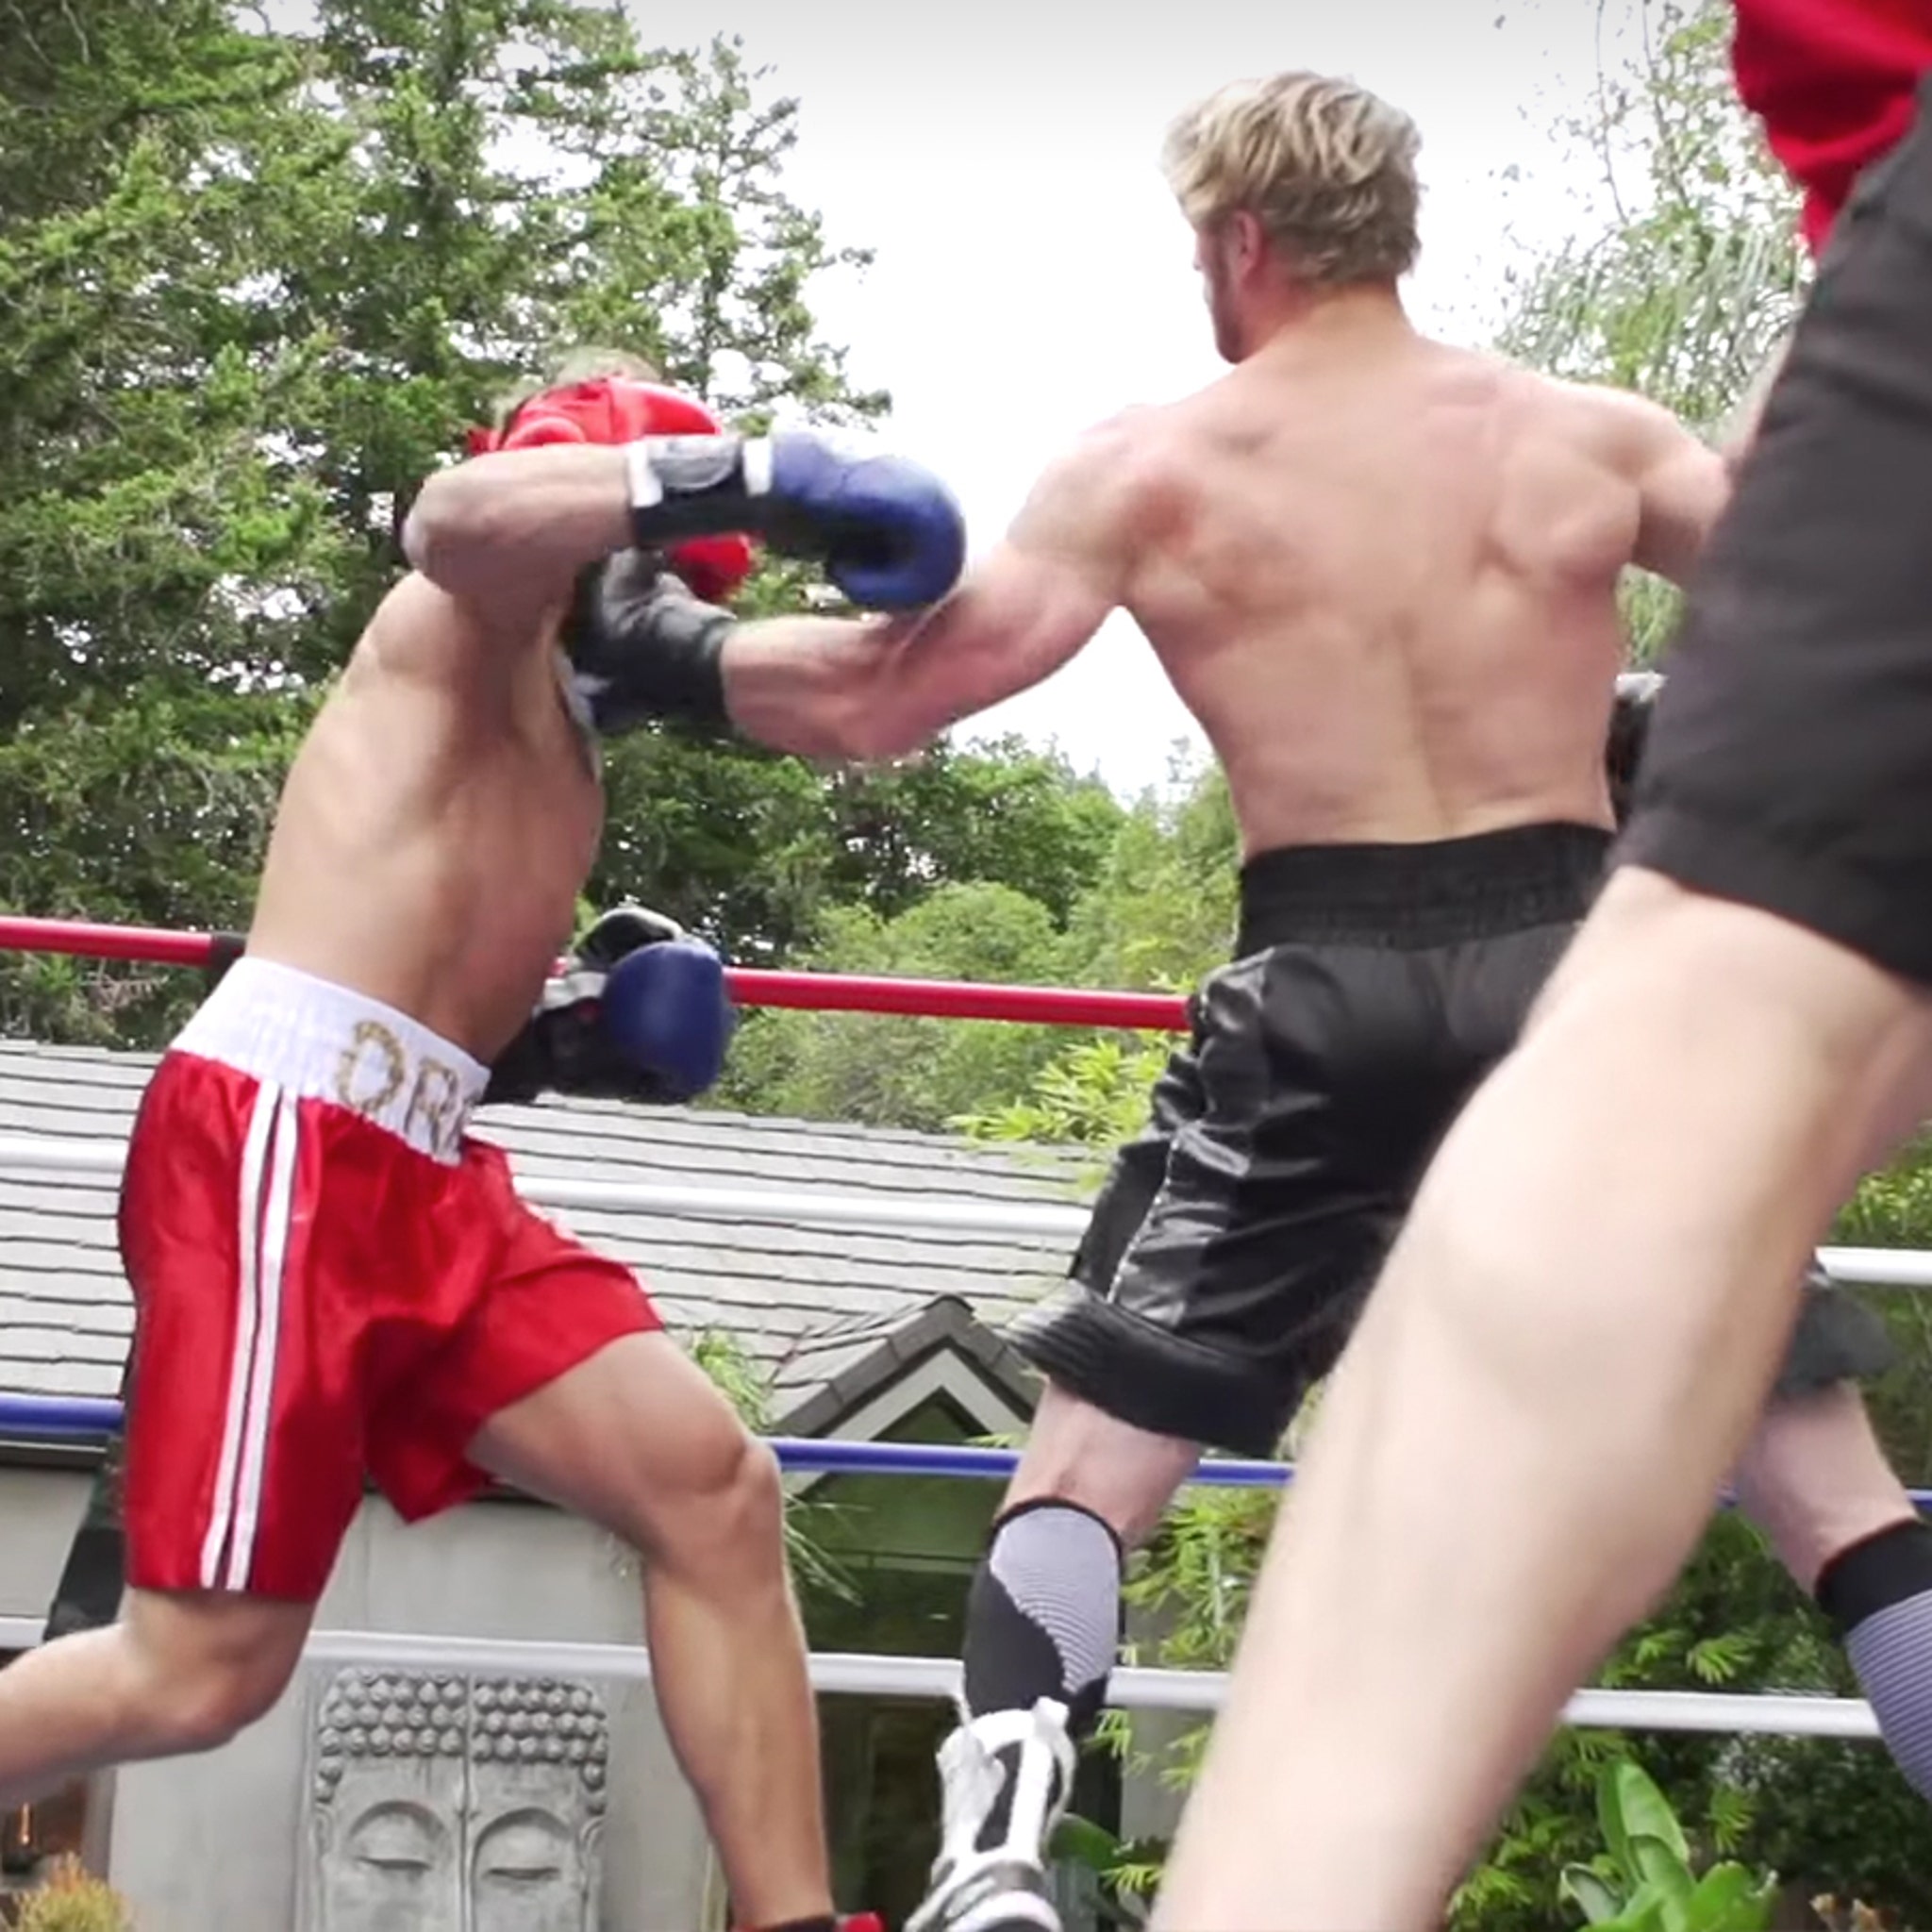 Logan Paul KOs Fake Ivan Drago in Impromptu Boxing Match, Calls Out KSI